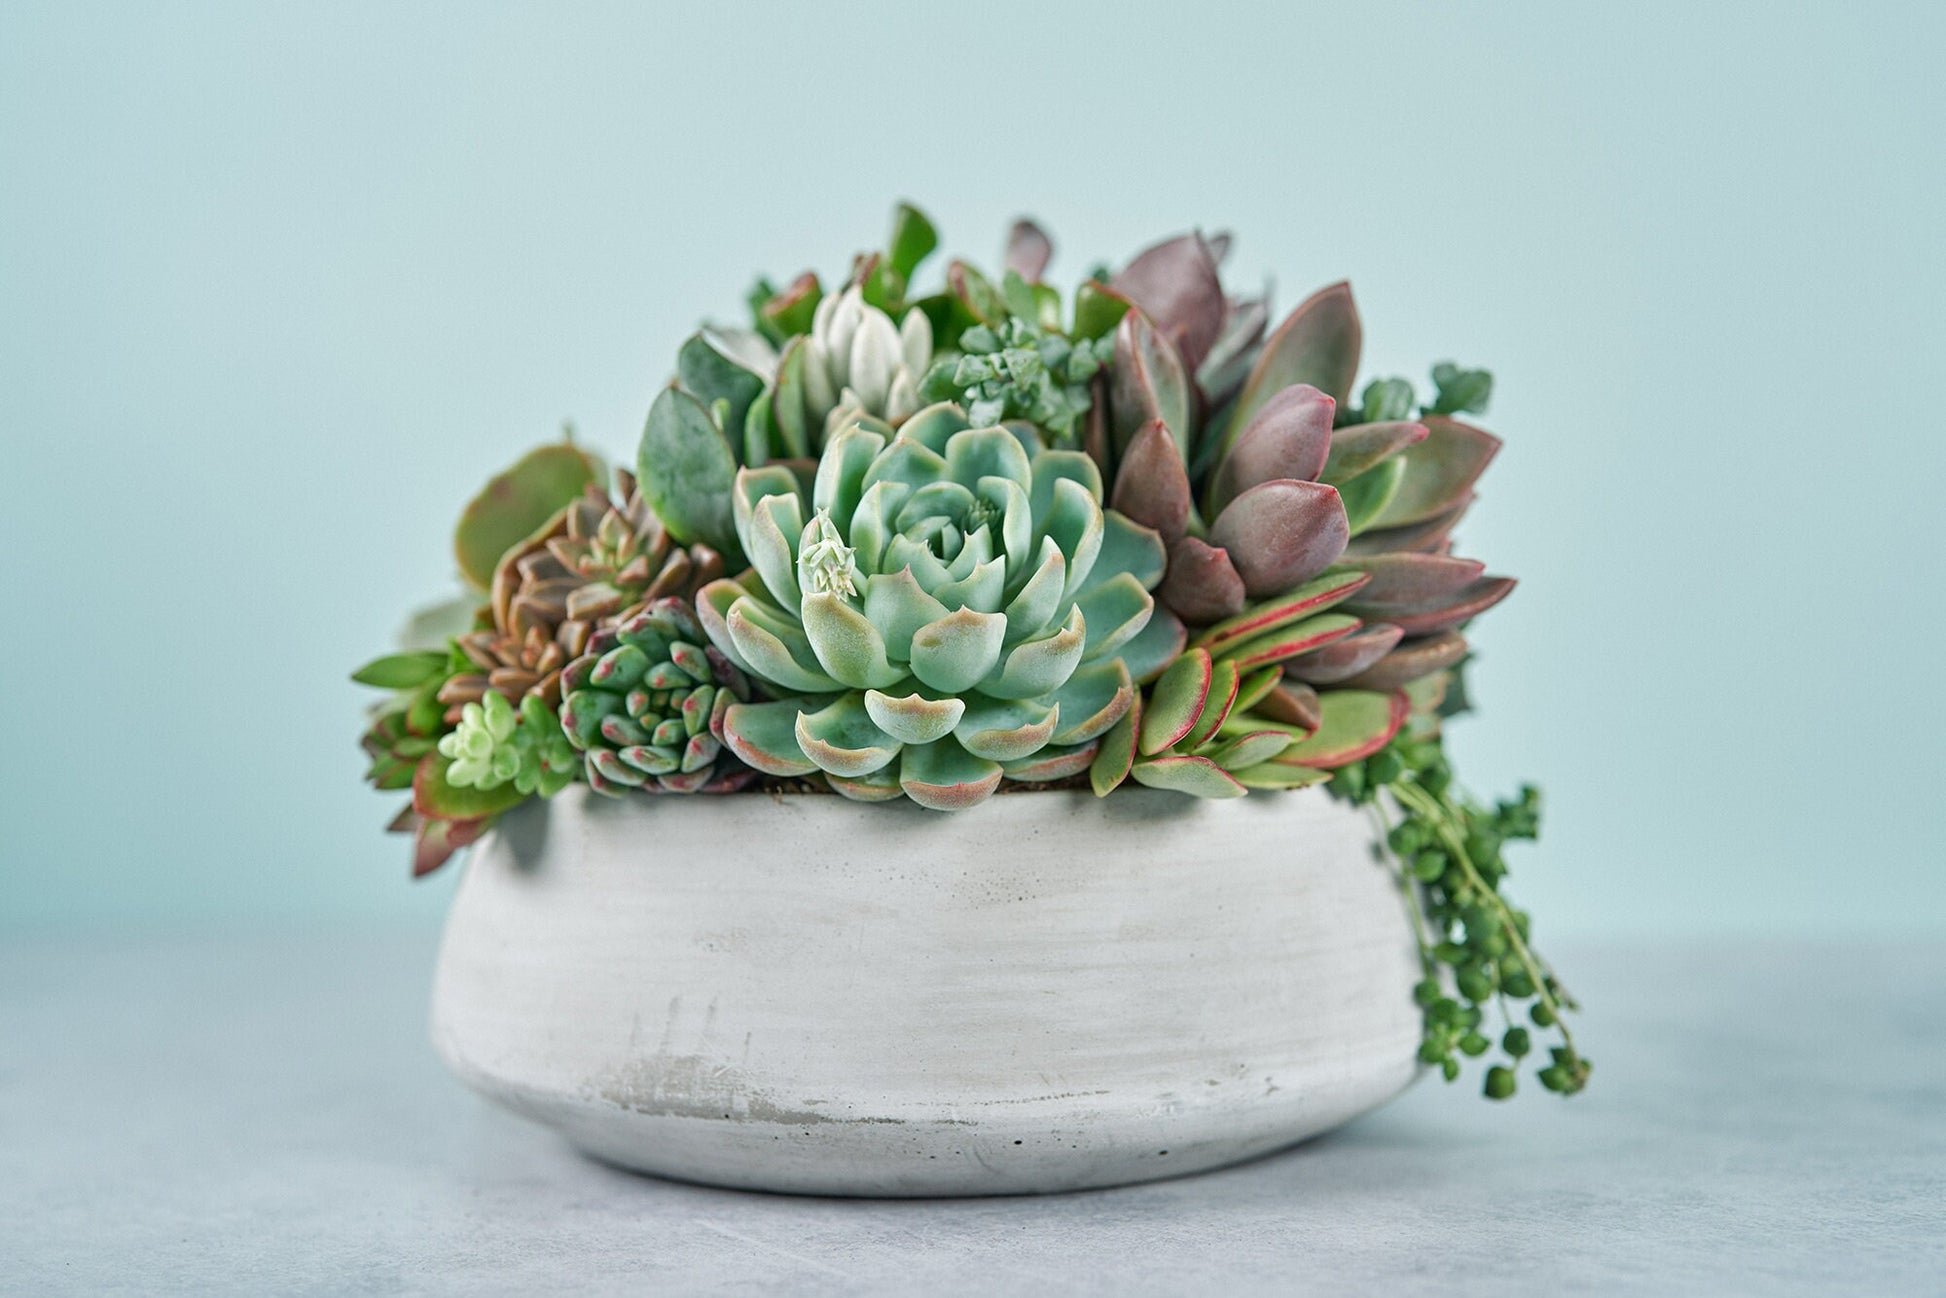 Concrete Bowl Succulent Arrangement | Floral Centerpiece | Earth Friendly Event Table Decor